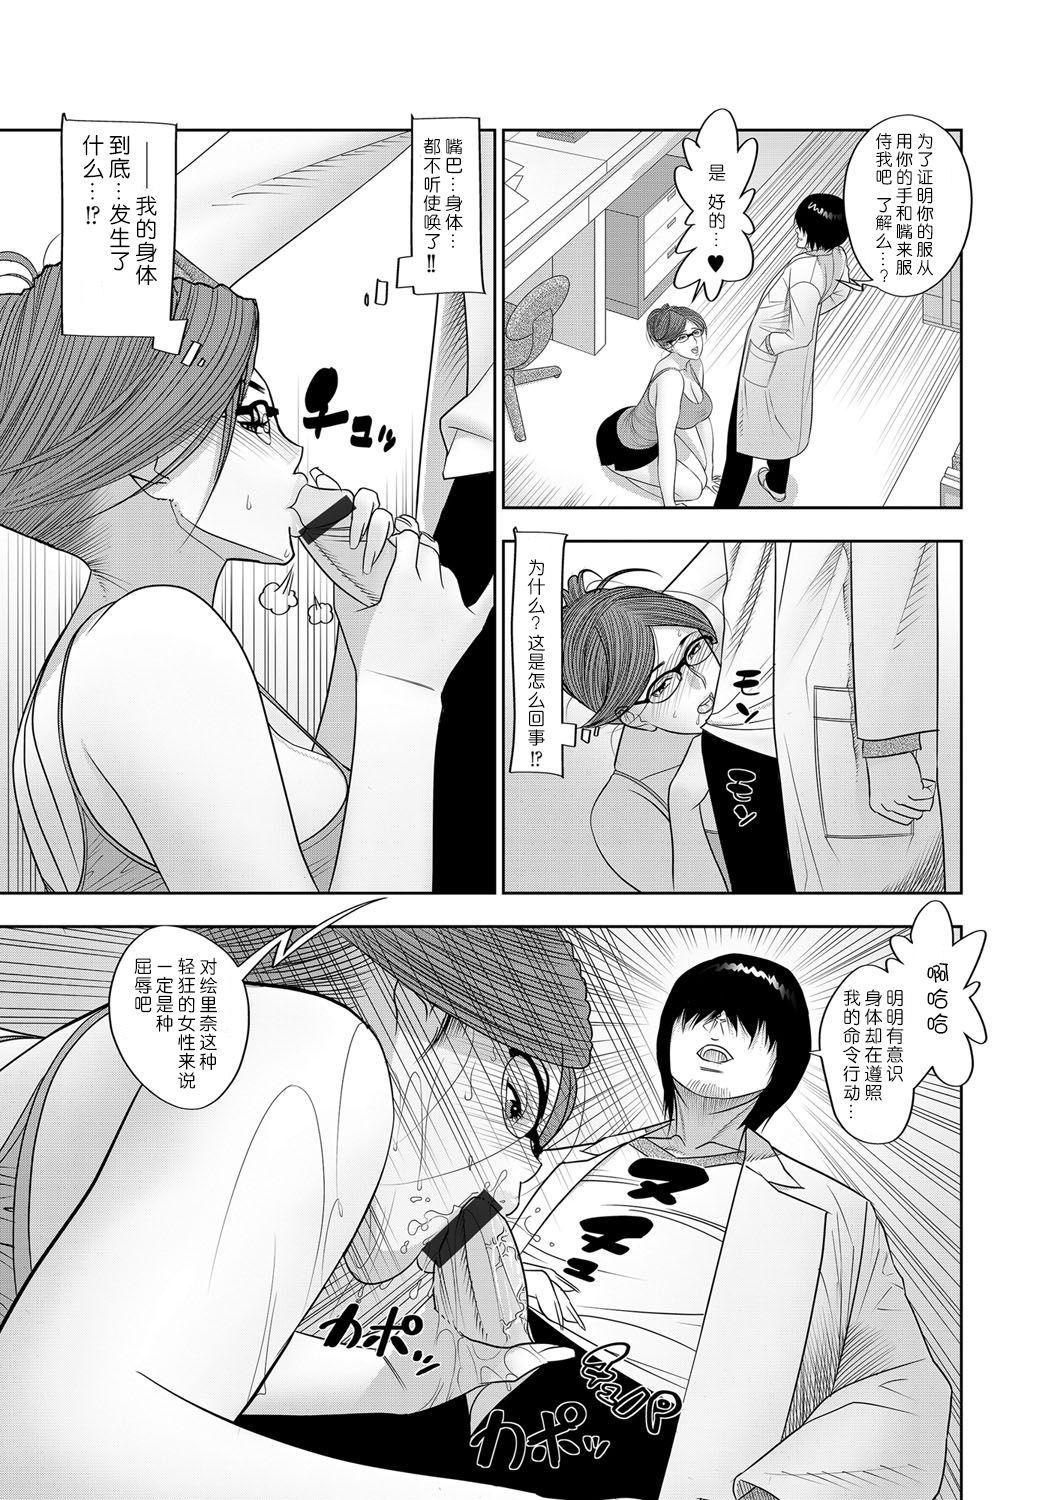 Romantic Kansatsu Jikkensitsu Yanks Featured - Page 7